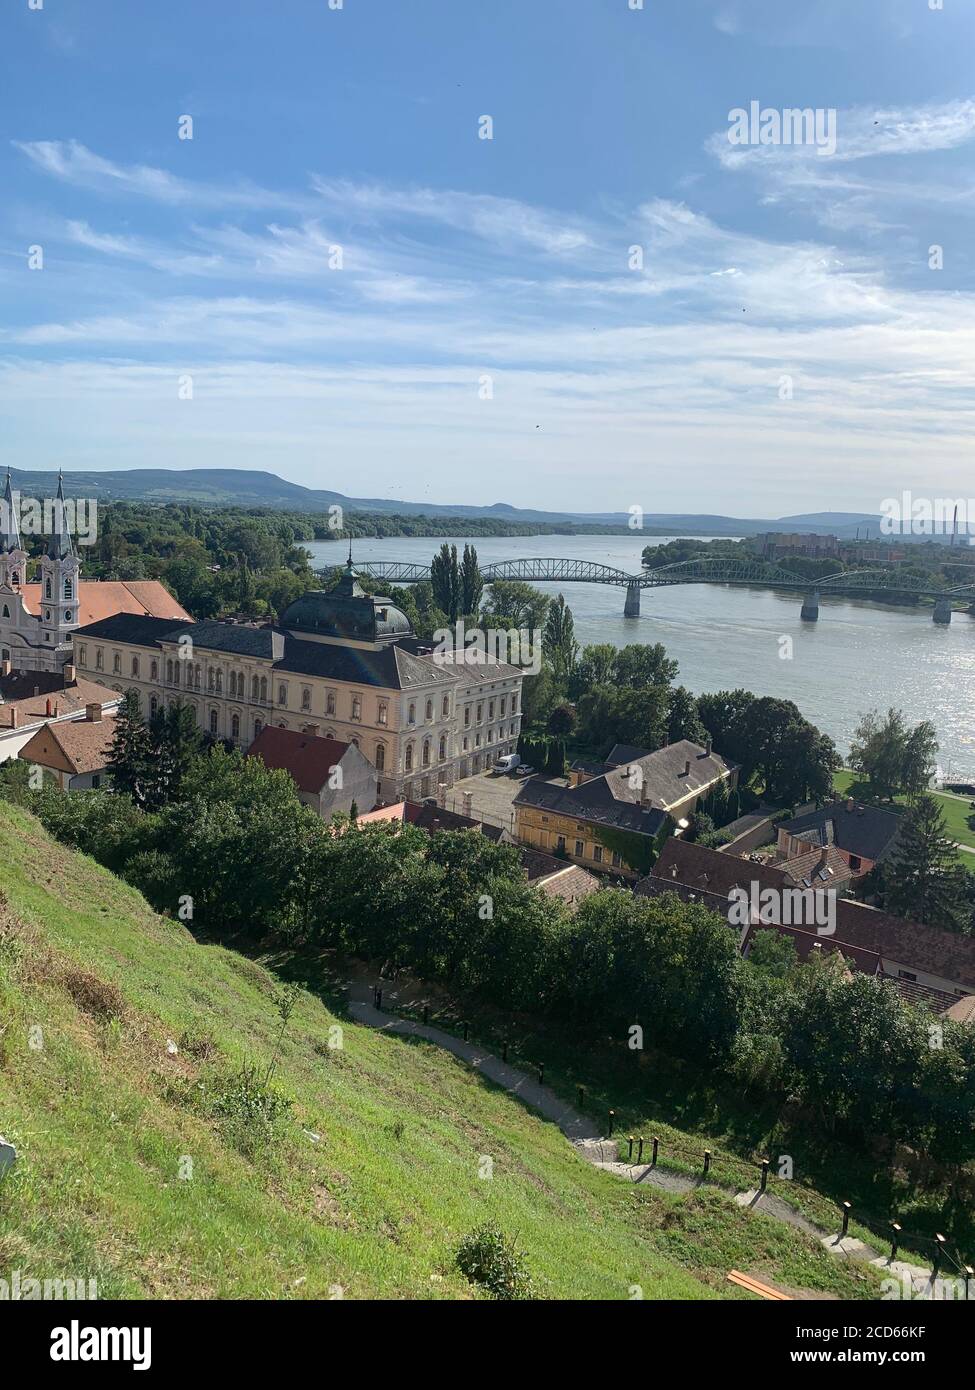 Pont Maria Valeria sur le Danube et la ville d'Esztergom. Esztergom, Hongrie. Banque D'Images